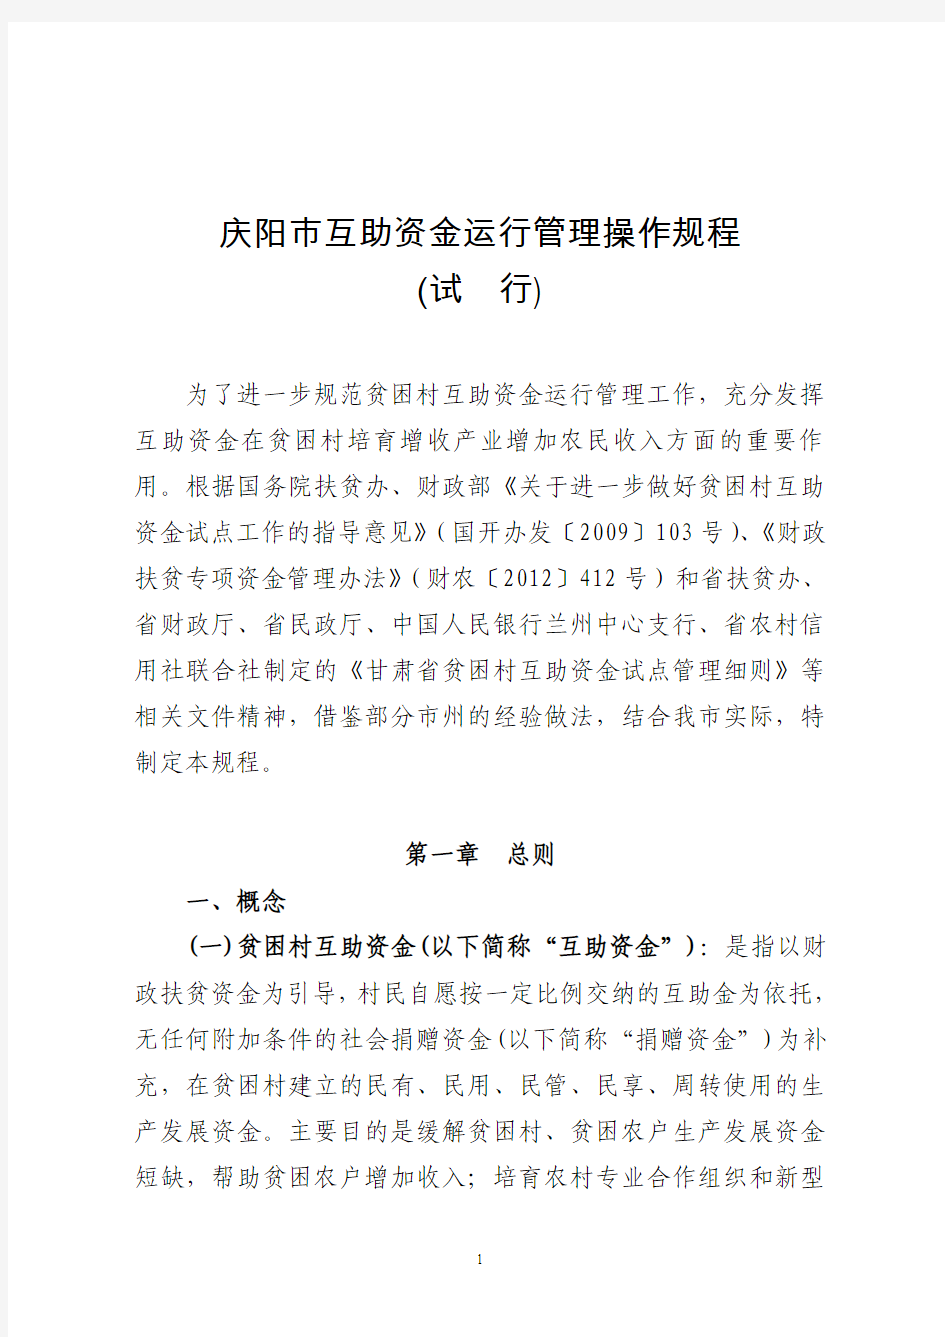 庆阳市贫困村互助资金运行管理规范第二次修改 (最新)2